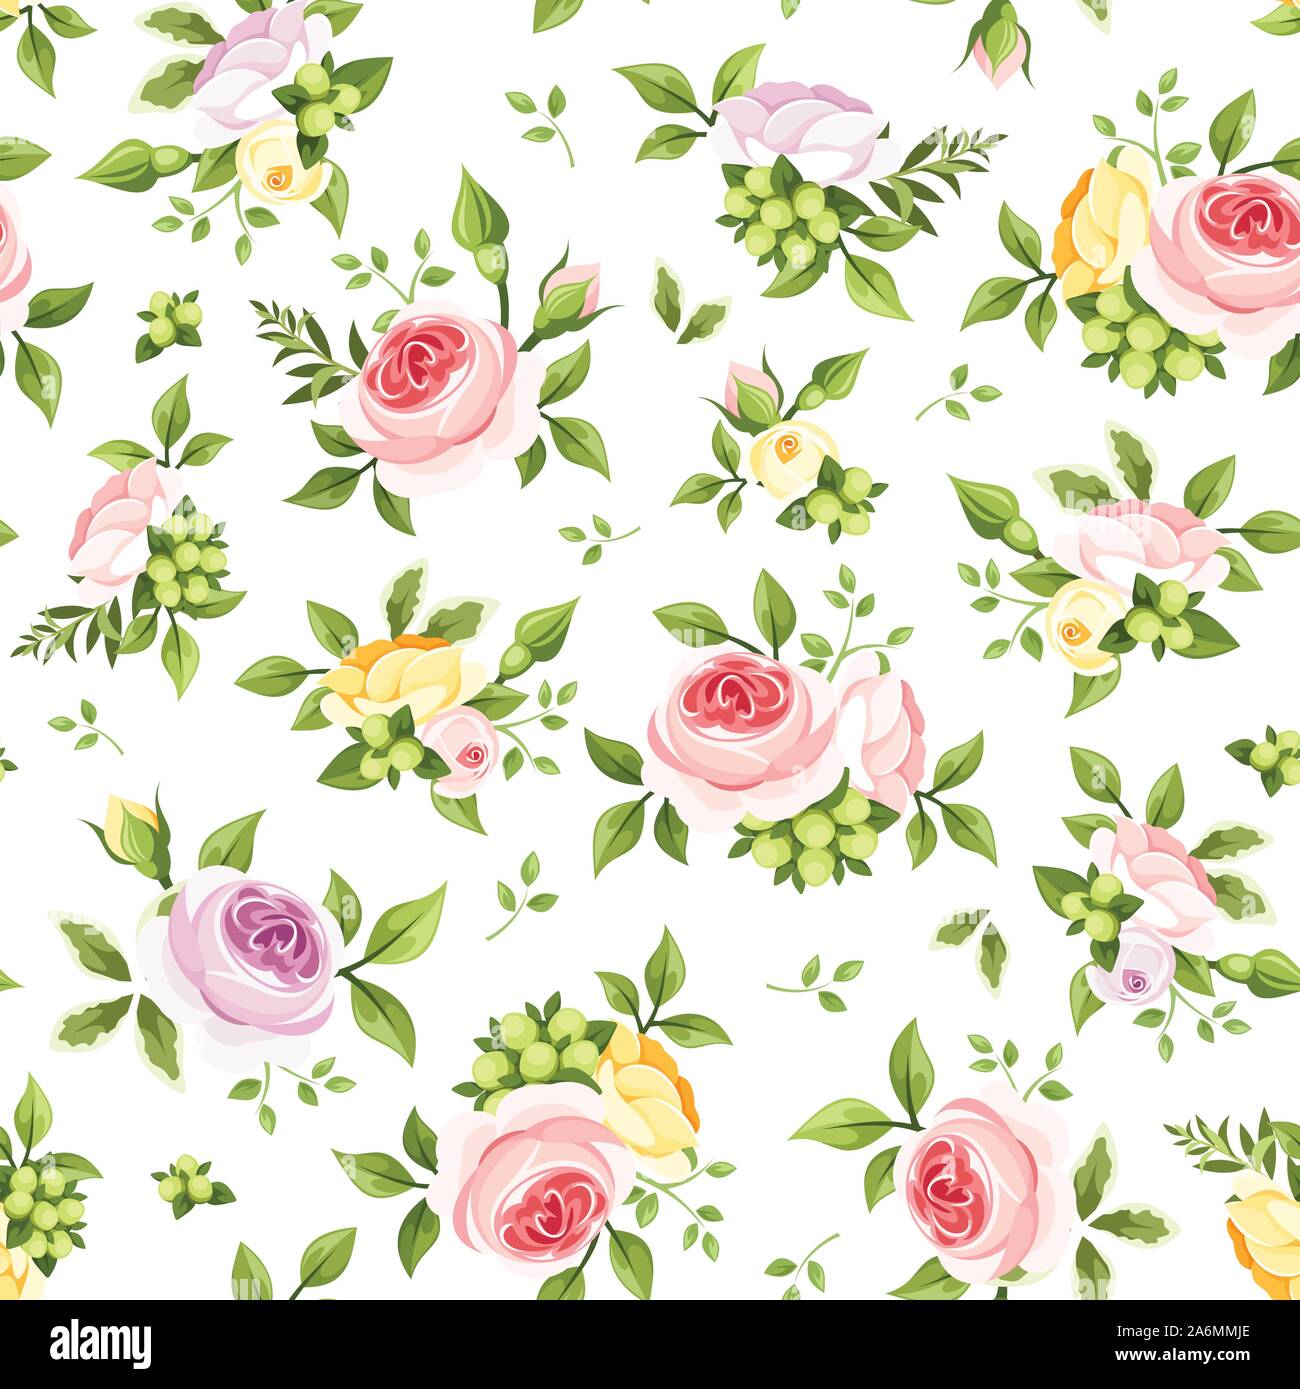 Vektor nahtlose Muster mit rosa, gelb und lila Rosen und grüne Blätter auf einem weißen Hintergrund. Stock Vektor